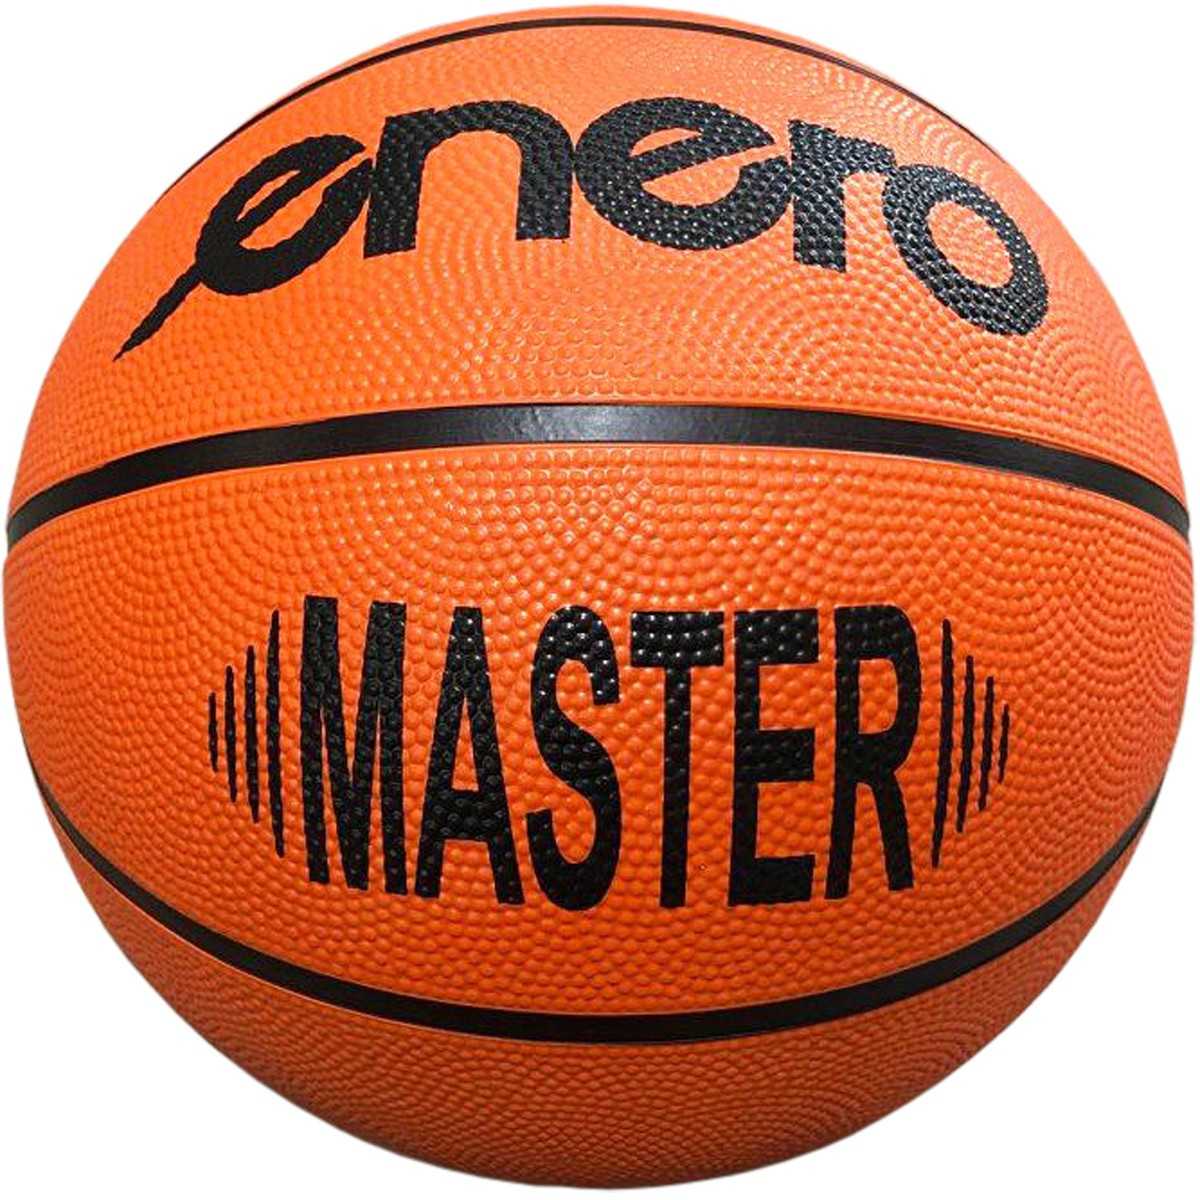 Enero Master krepšinio kamuolys, 7